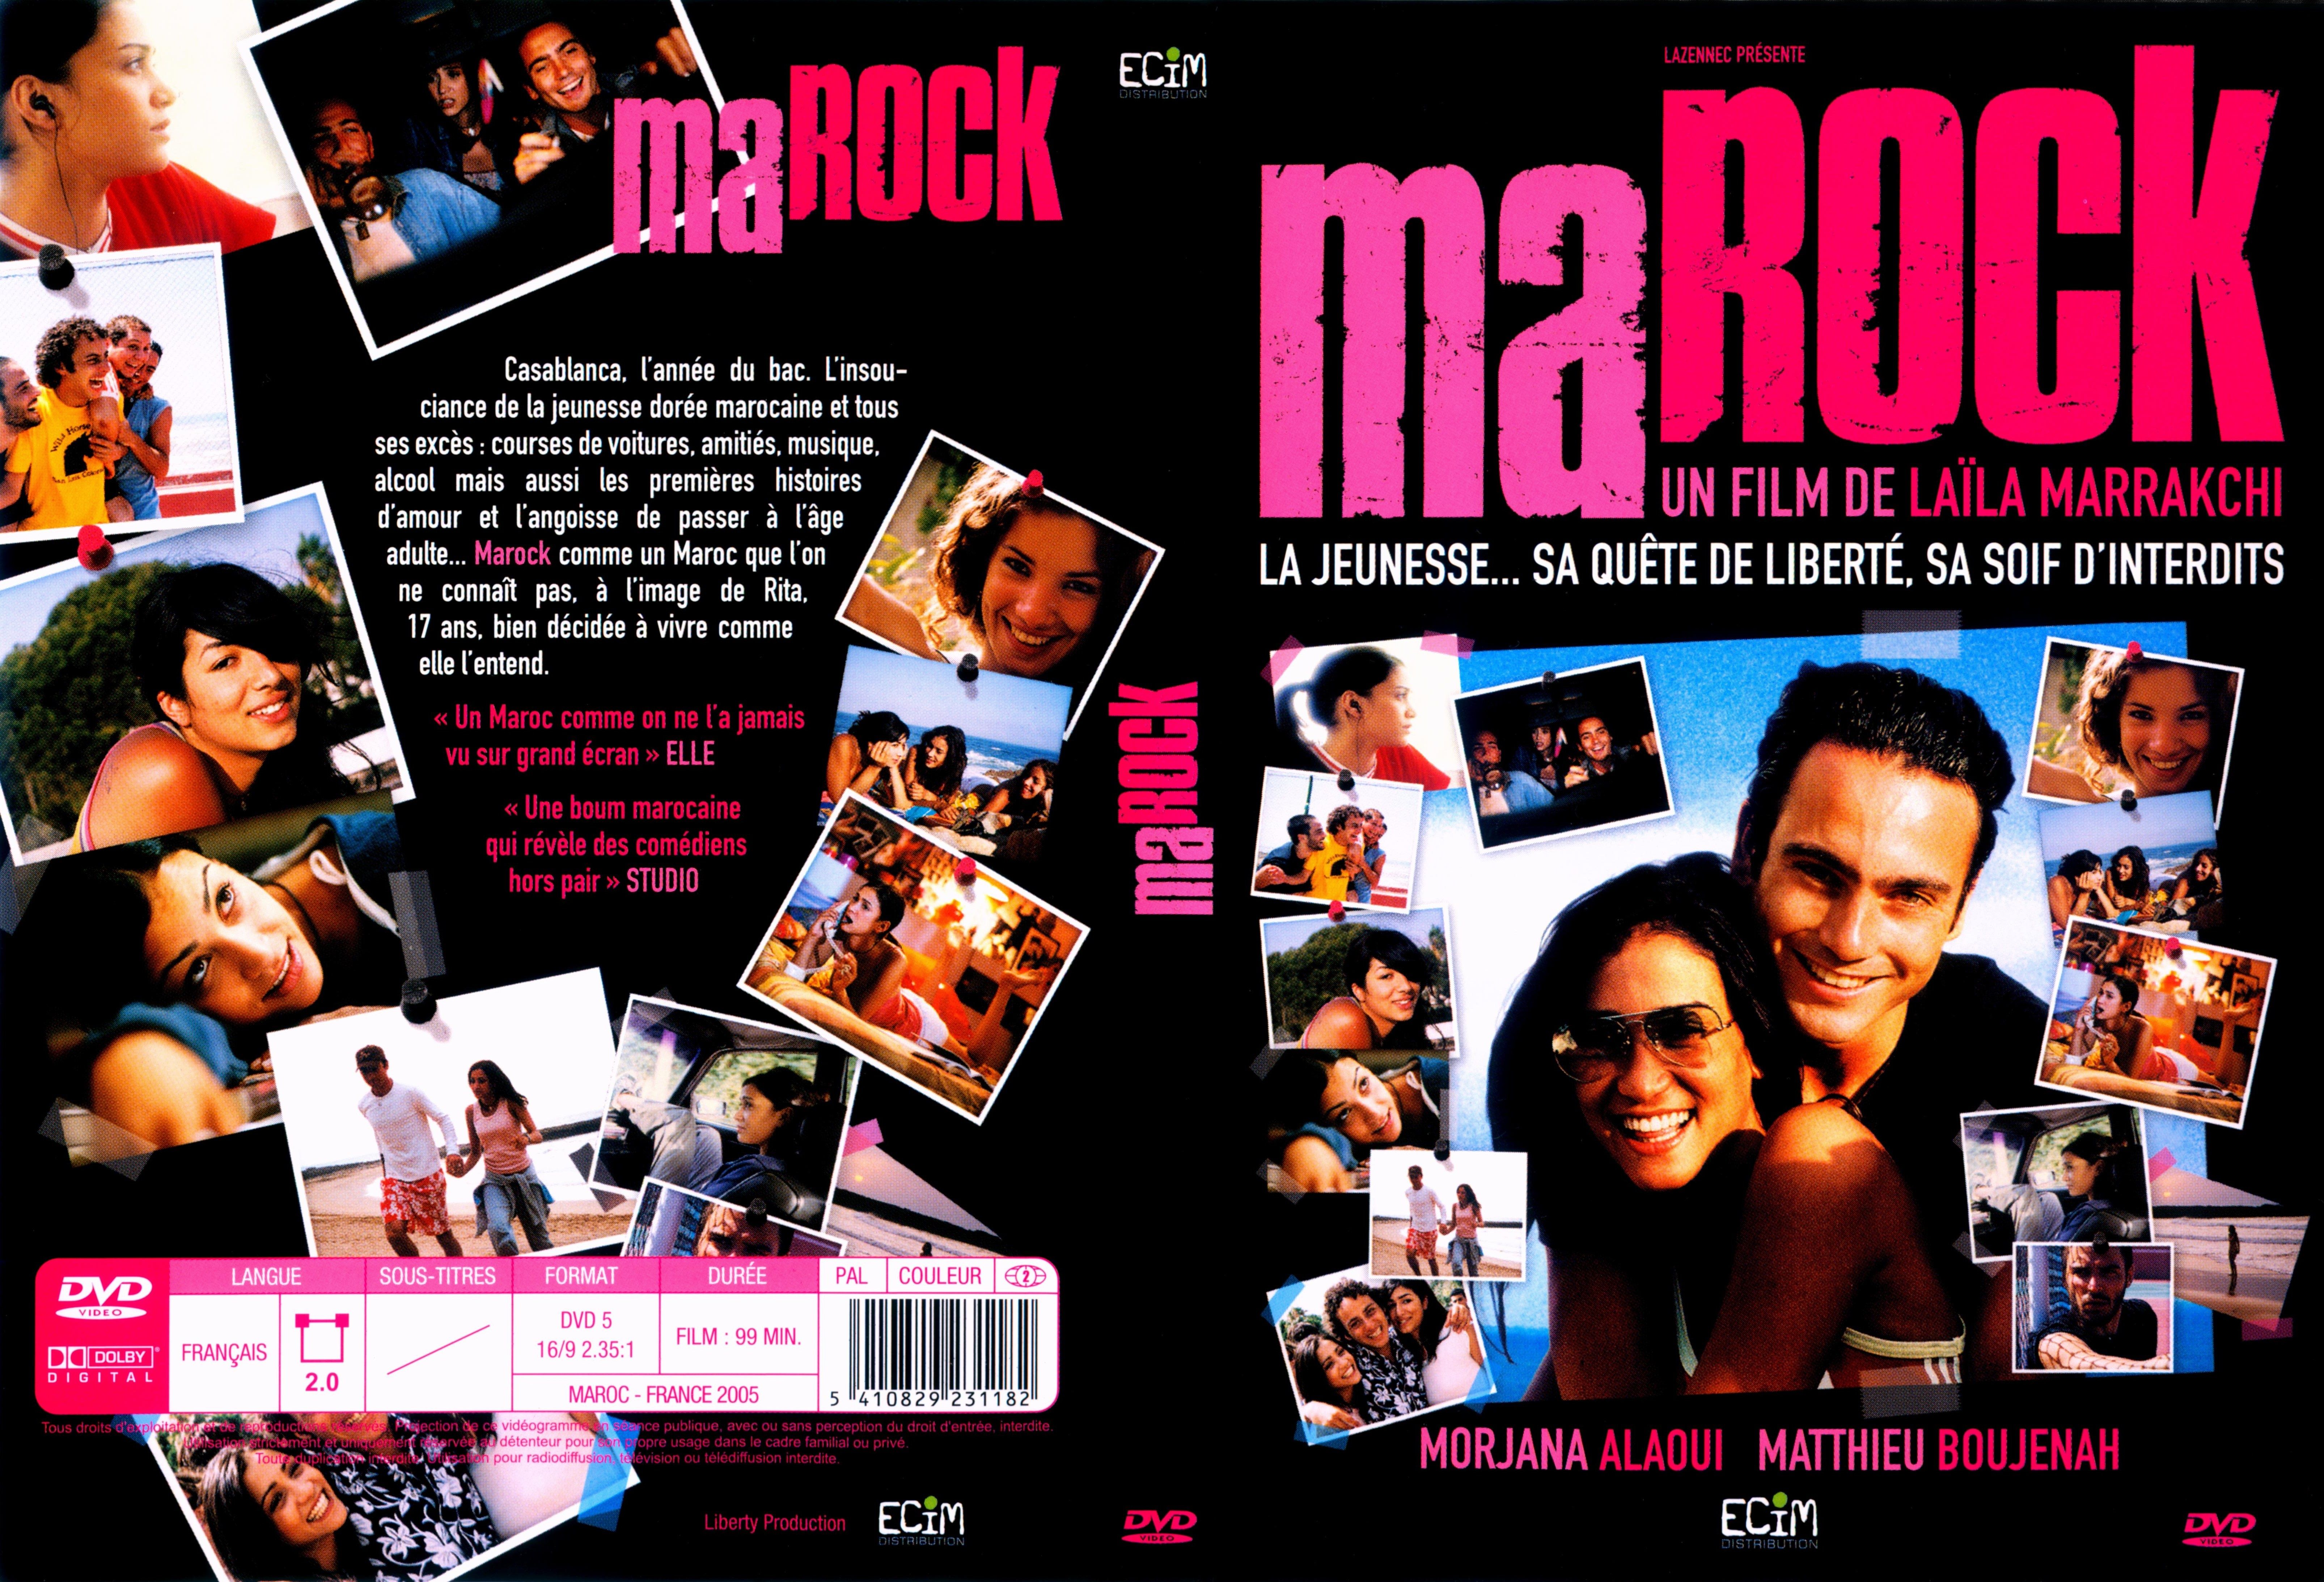 Jaquette DVD Marock v2